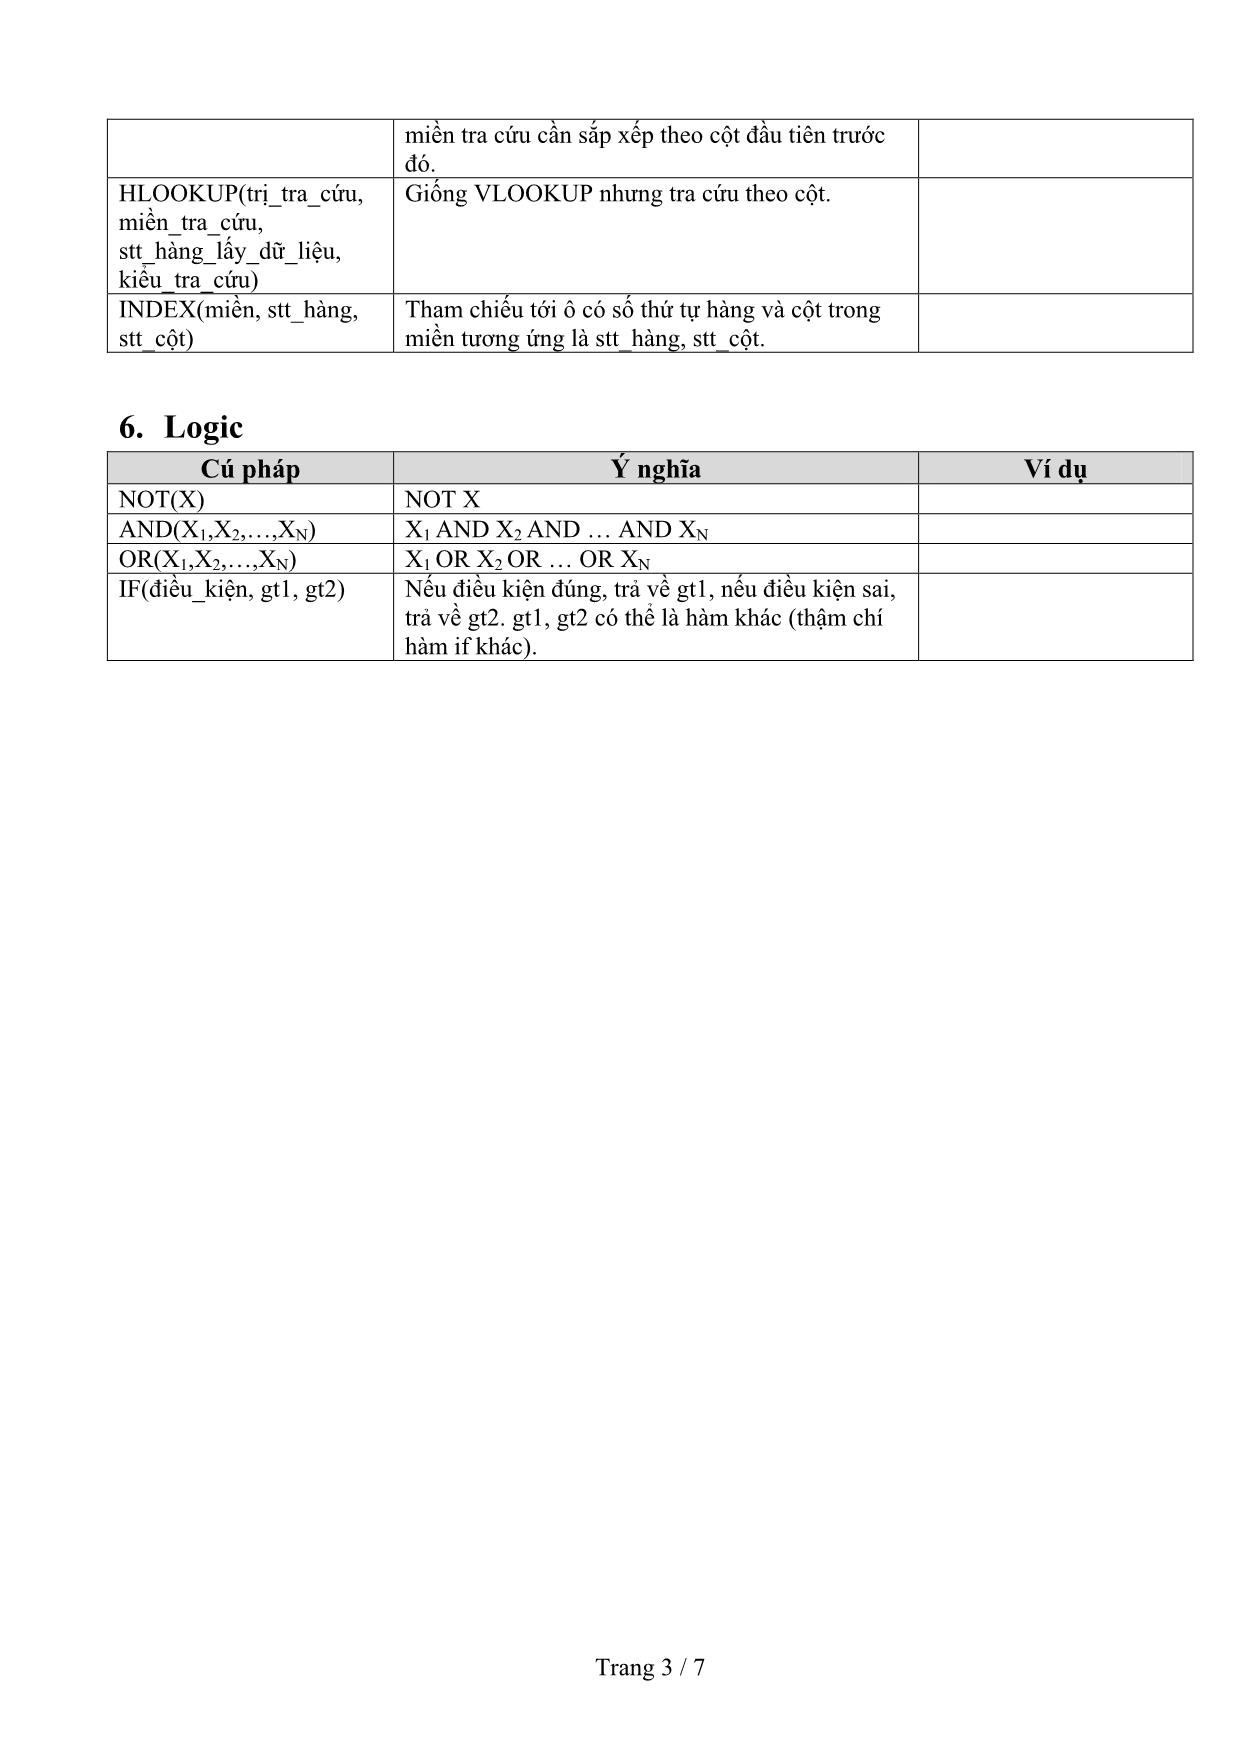 Tổng kết hàm thông dụng trong Microsoft Excel trang 3